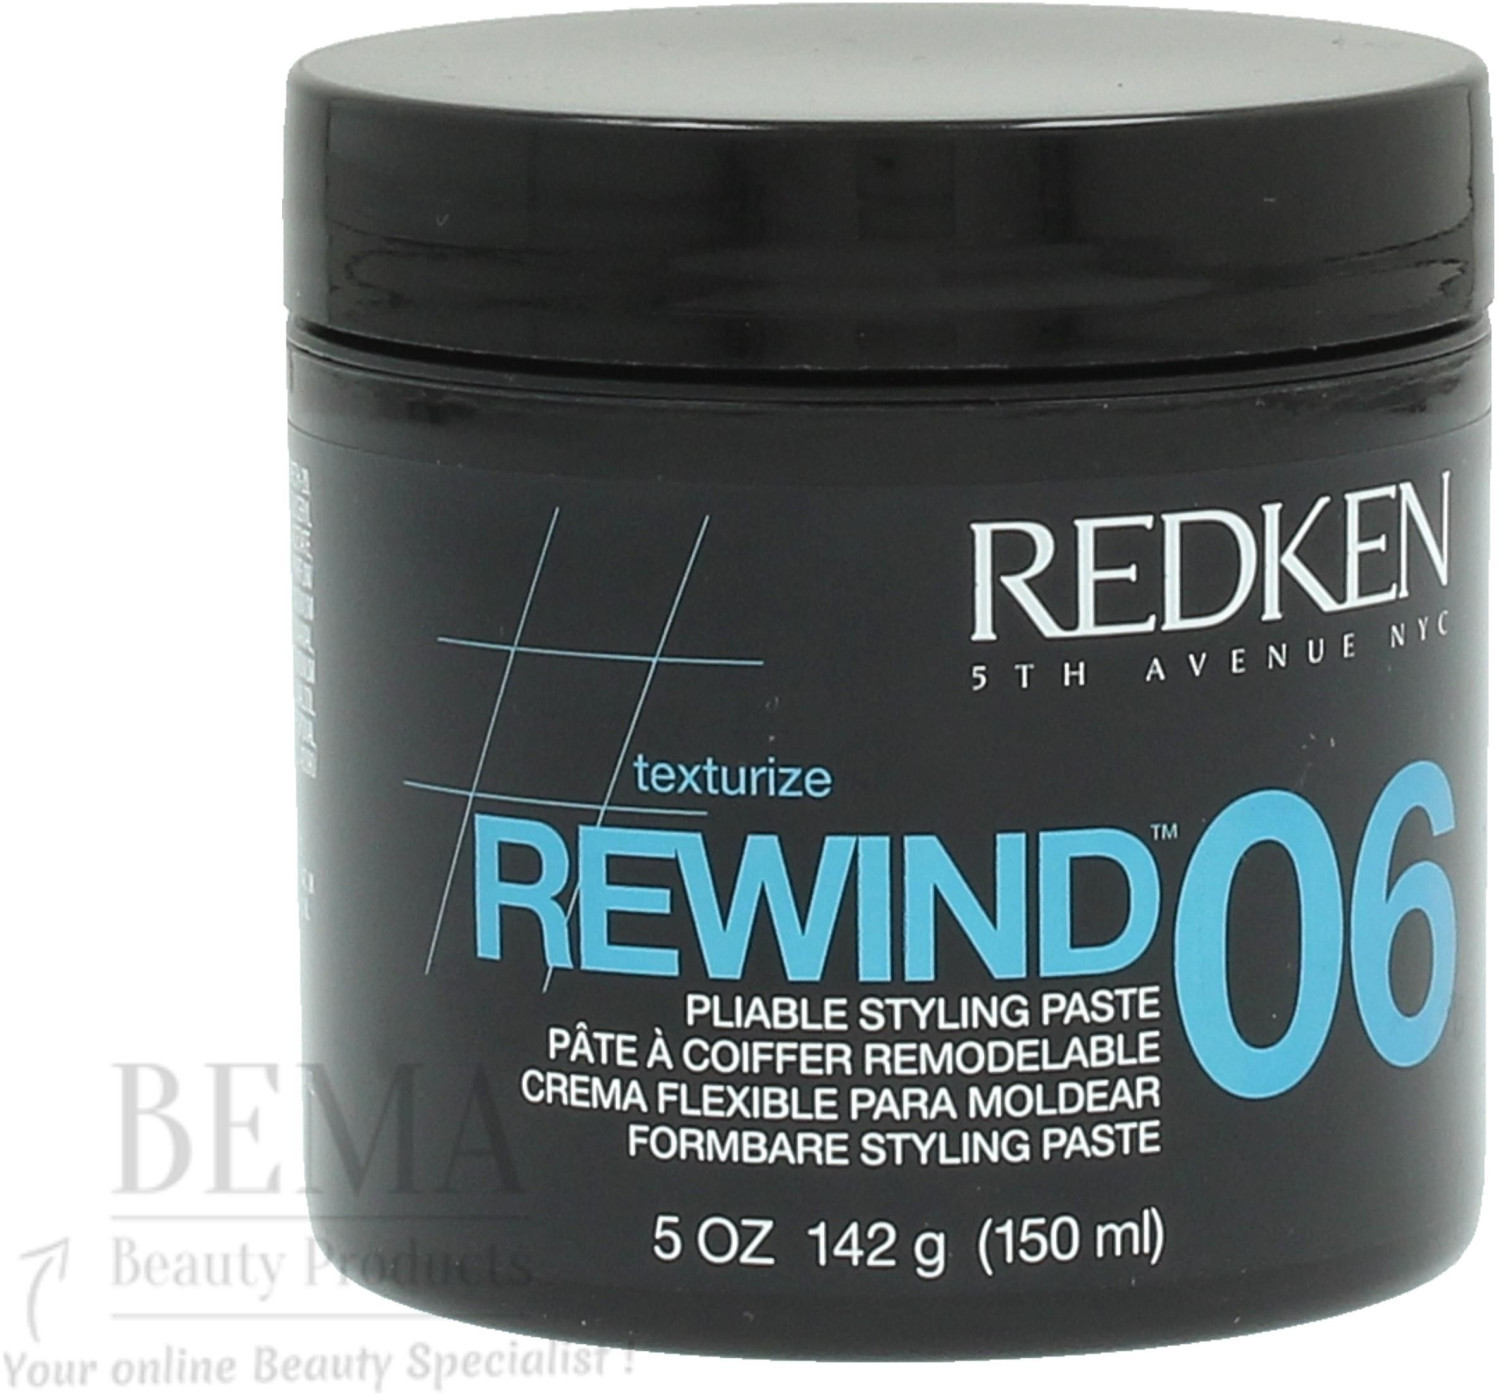 Redken Rewind 06 (150ml) ab € 12,35 | aktuelle Angebote bei idealo.at